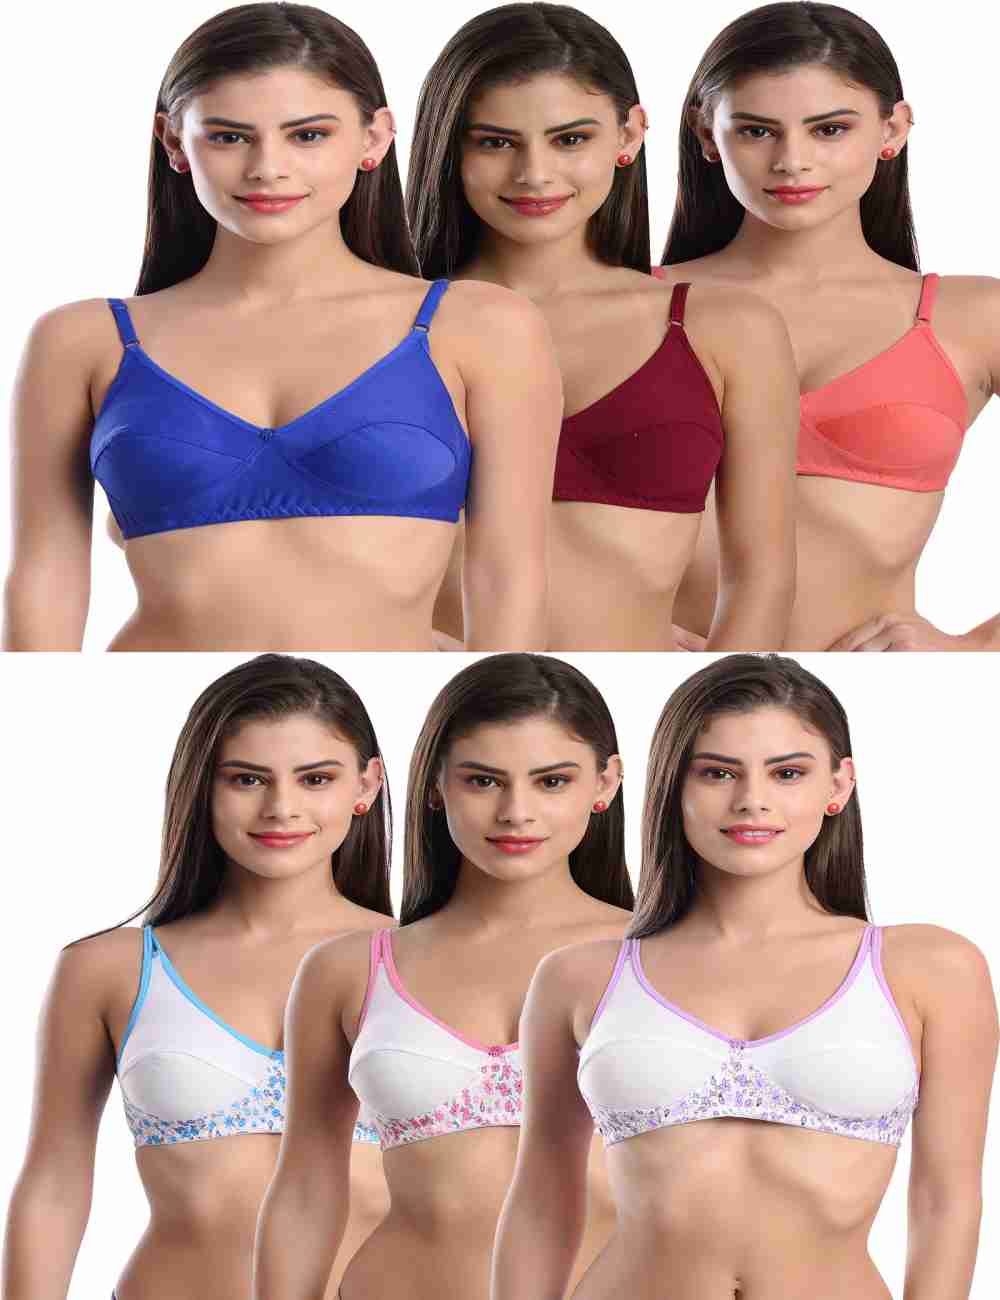 40B Bra (40b ब्रा) - Buy 40b Size Bras Online in India, 40b cup bras